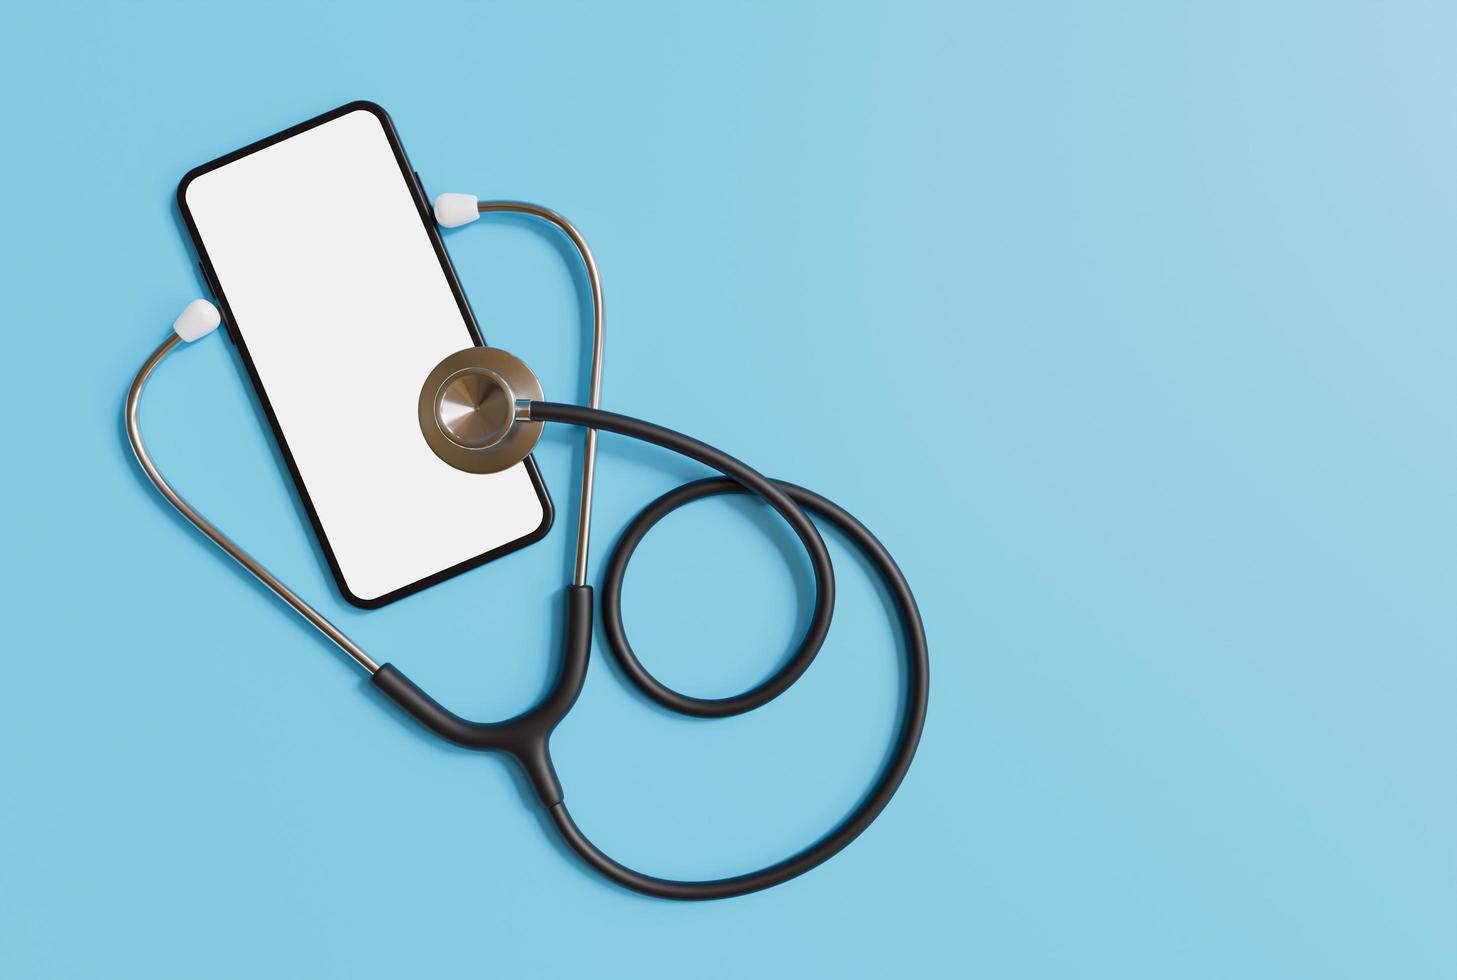 estetoscópio e smartphone em fundo azul, maquete de smartphone de saúde de aplicativo, obtenha uma consulta on-line de médico por smartphone, conceito de consulta on-line de médico. renderização 3D. foto